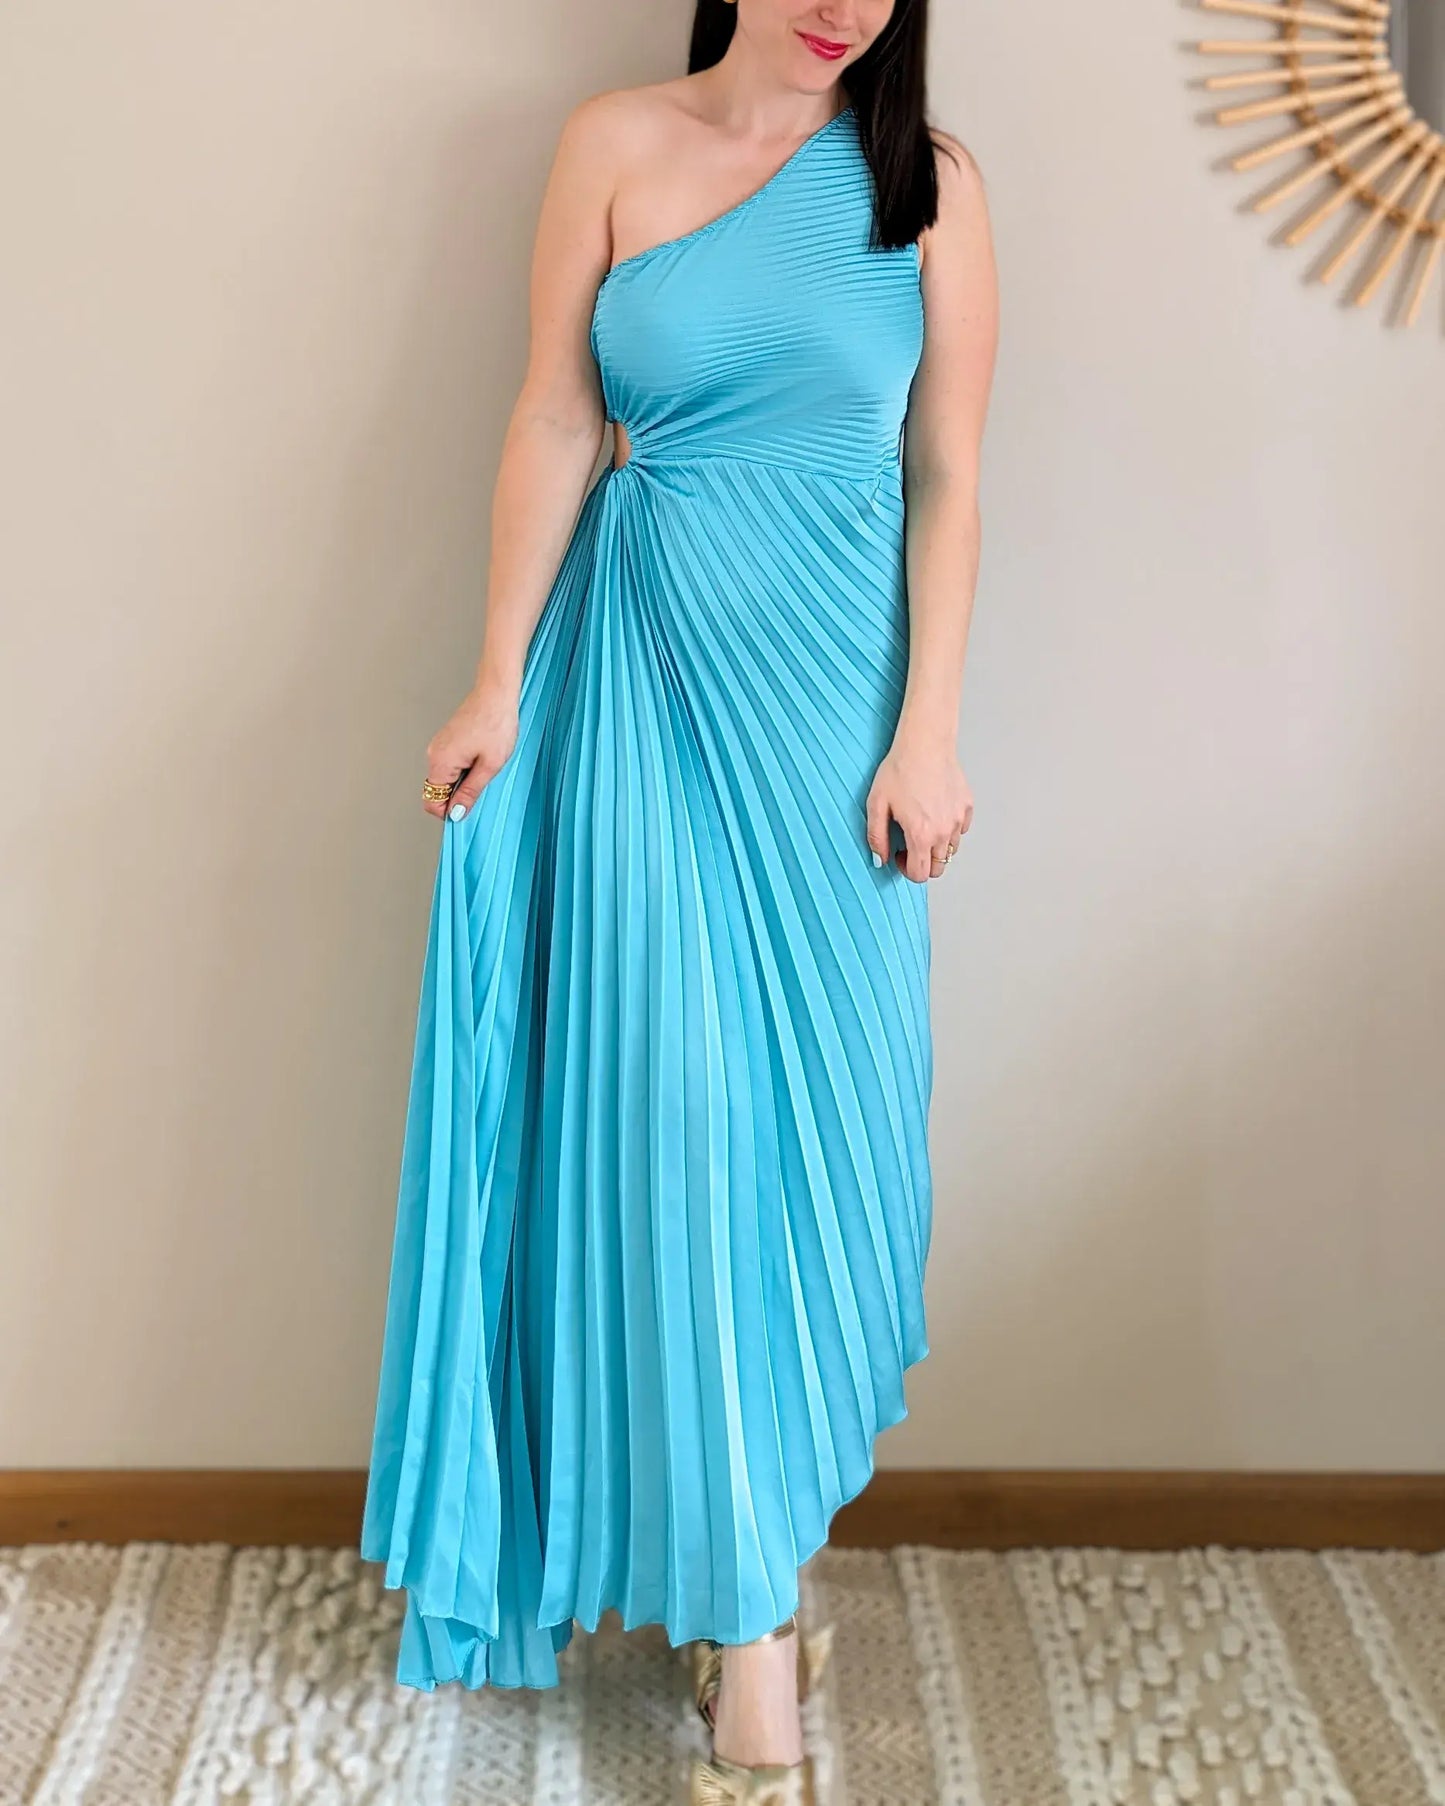 Robe - Angelina turquoise